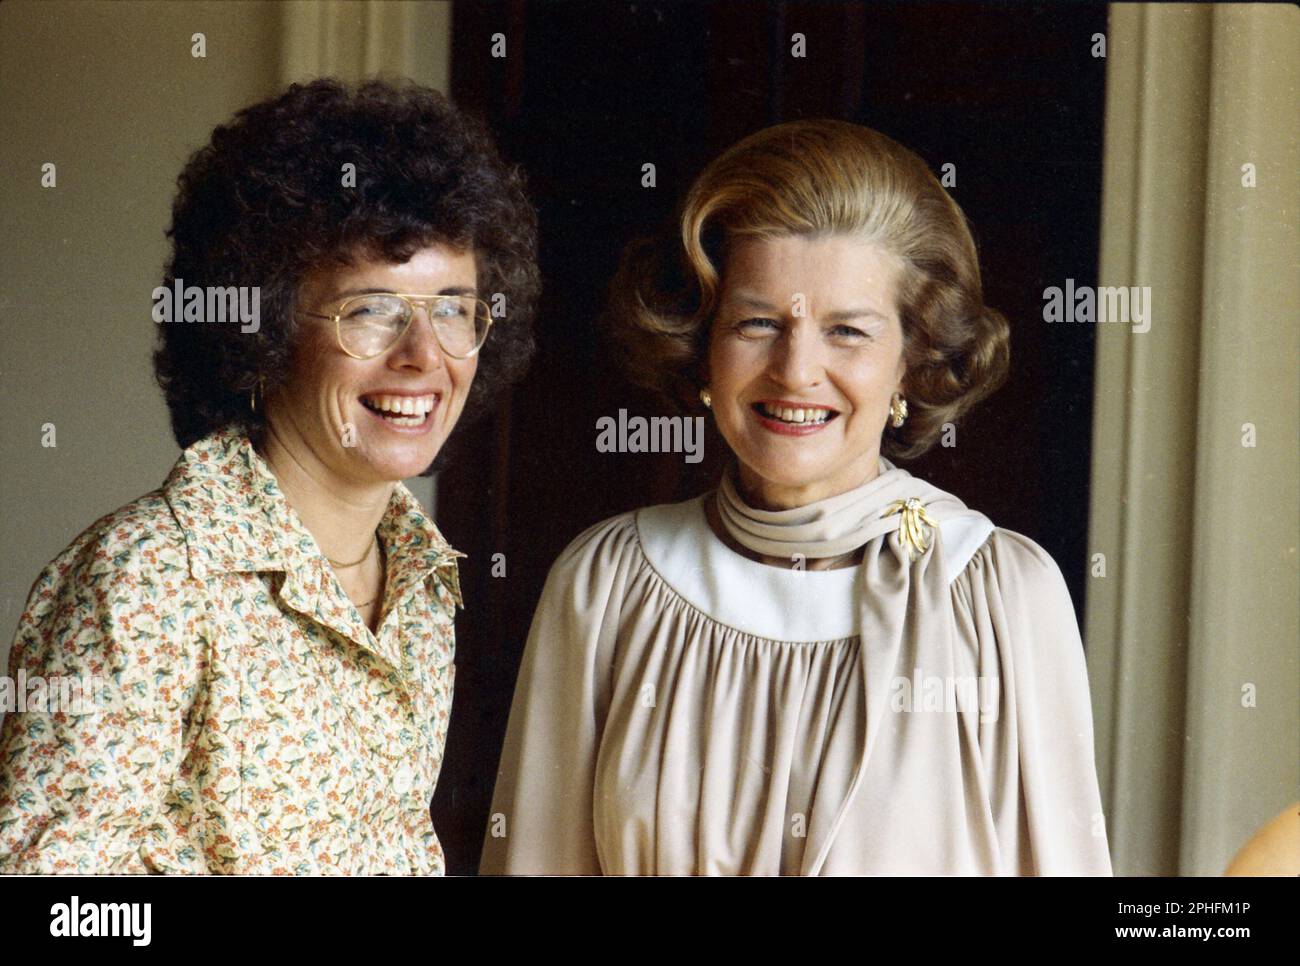 Billie Jean King, joueur de tennis professionnel et champion de Wimbledon, pose avec la première dame Betty Ford à la Maison Blanche, Washington, DC, 7/21/1975. (Photo de la collection de photos de la Maison Blanche Banque D'Images